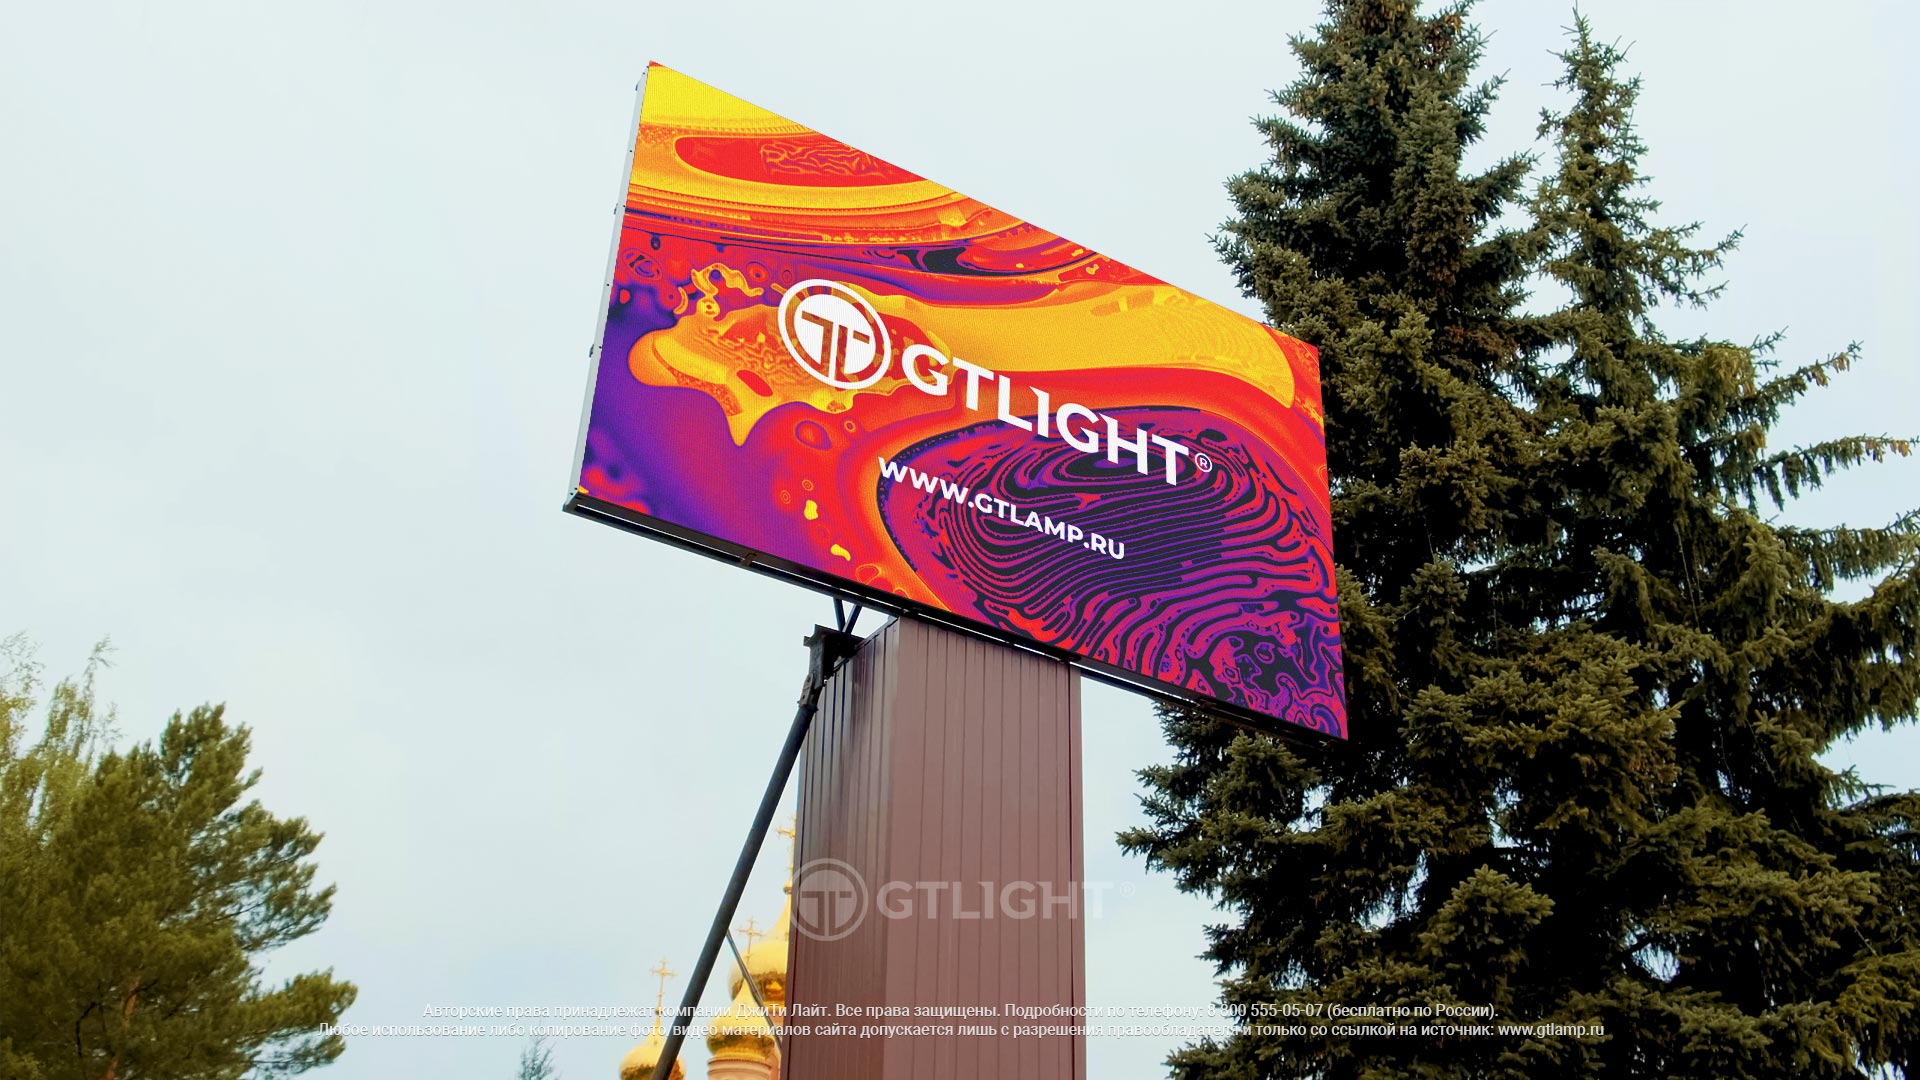 Светодиодный уличный экран для рекламы, Осинники, рекламное агентство «Площадь», фото 5